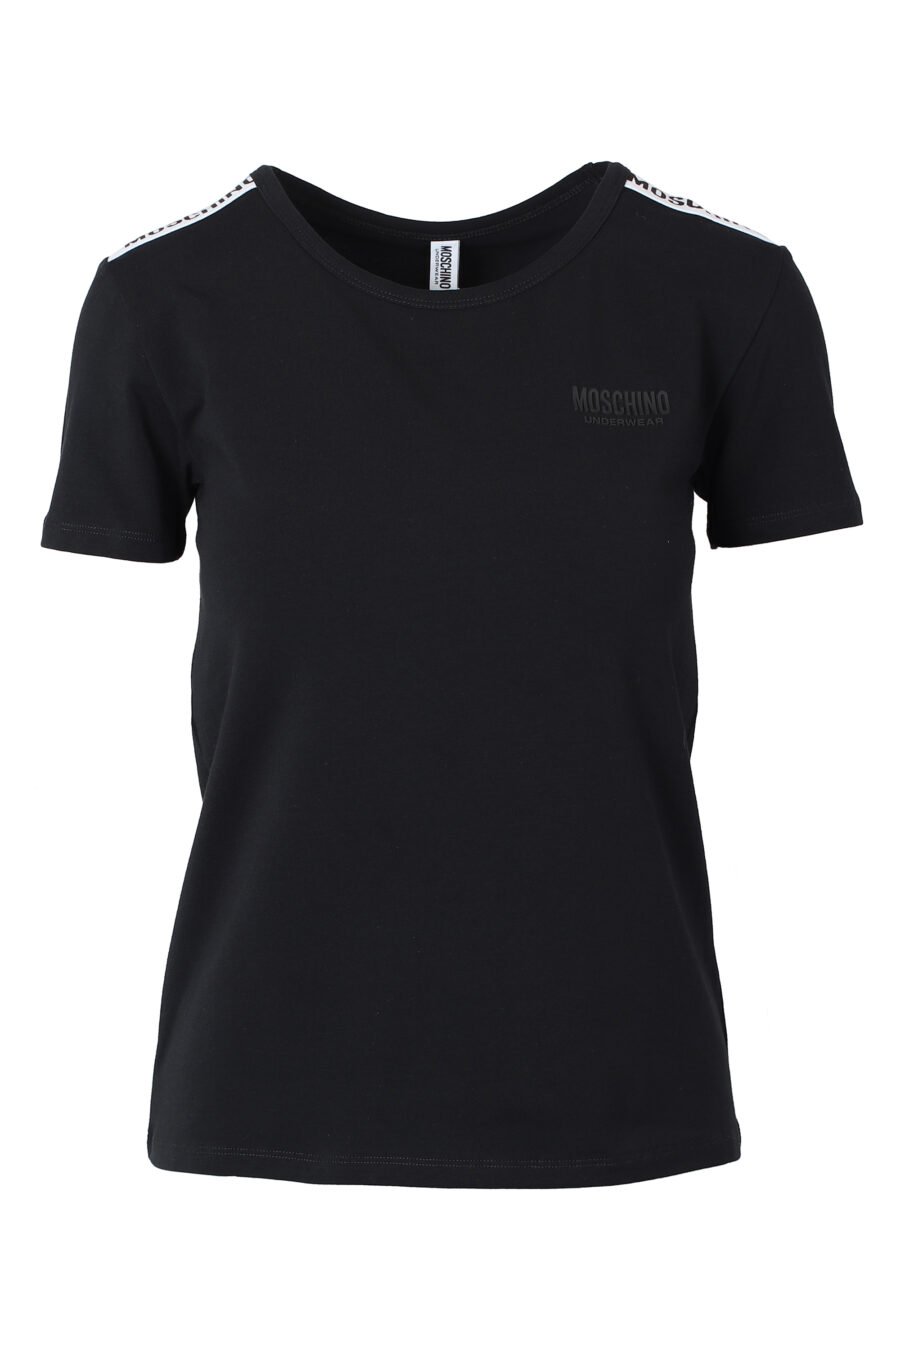 Camiseta negra slim fit con logo en cinta en hombros - IMG 9823